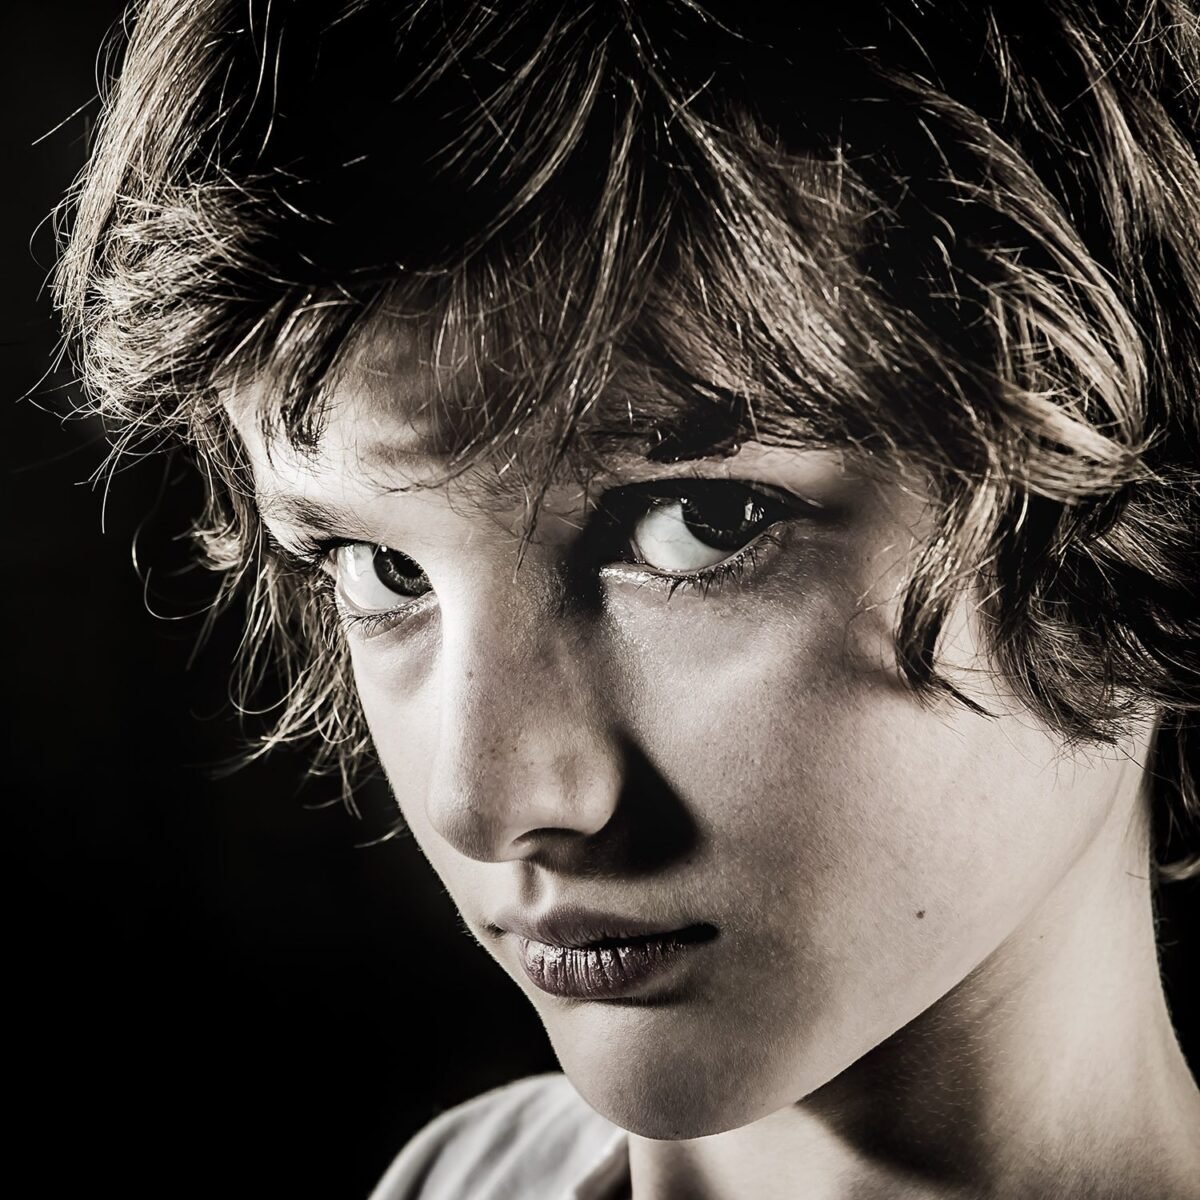 Portrait d'enfant - Photographie d'art par Idan Wizen - Don’t tell me you didn’t know